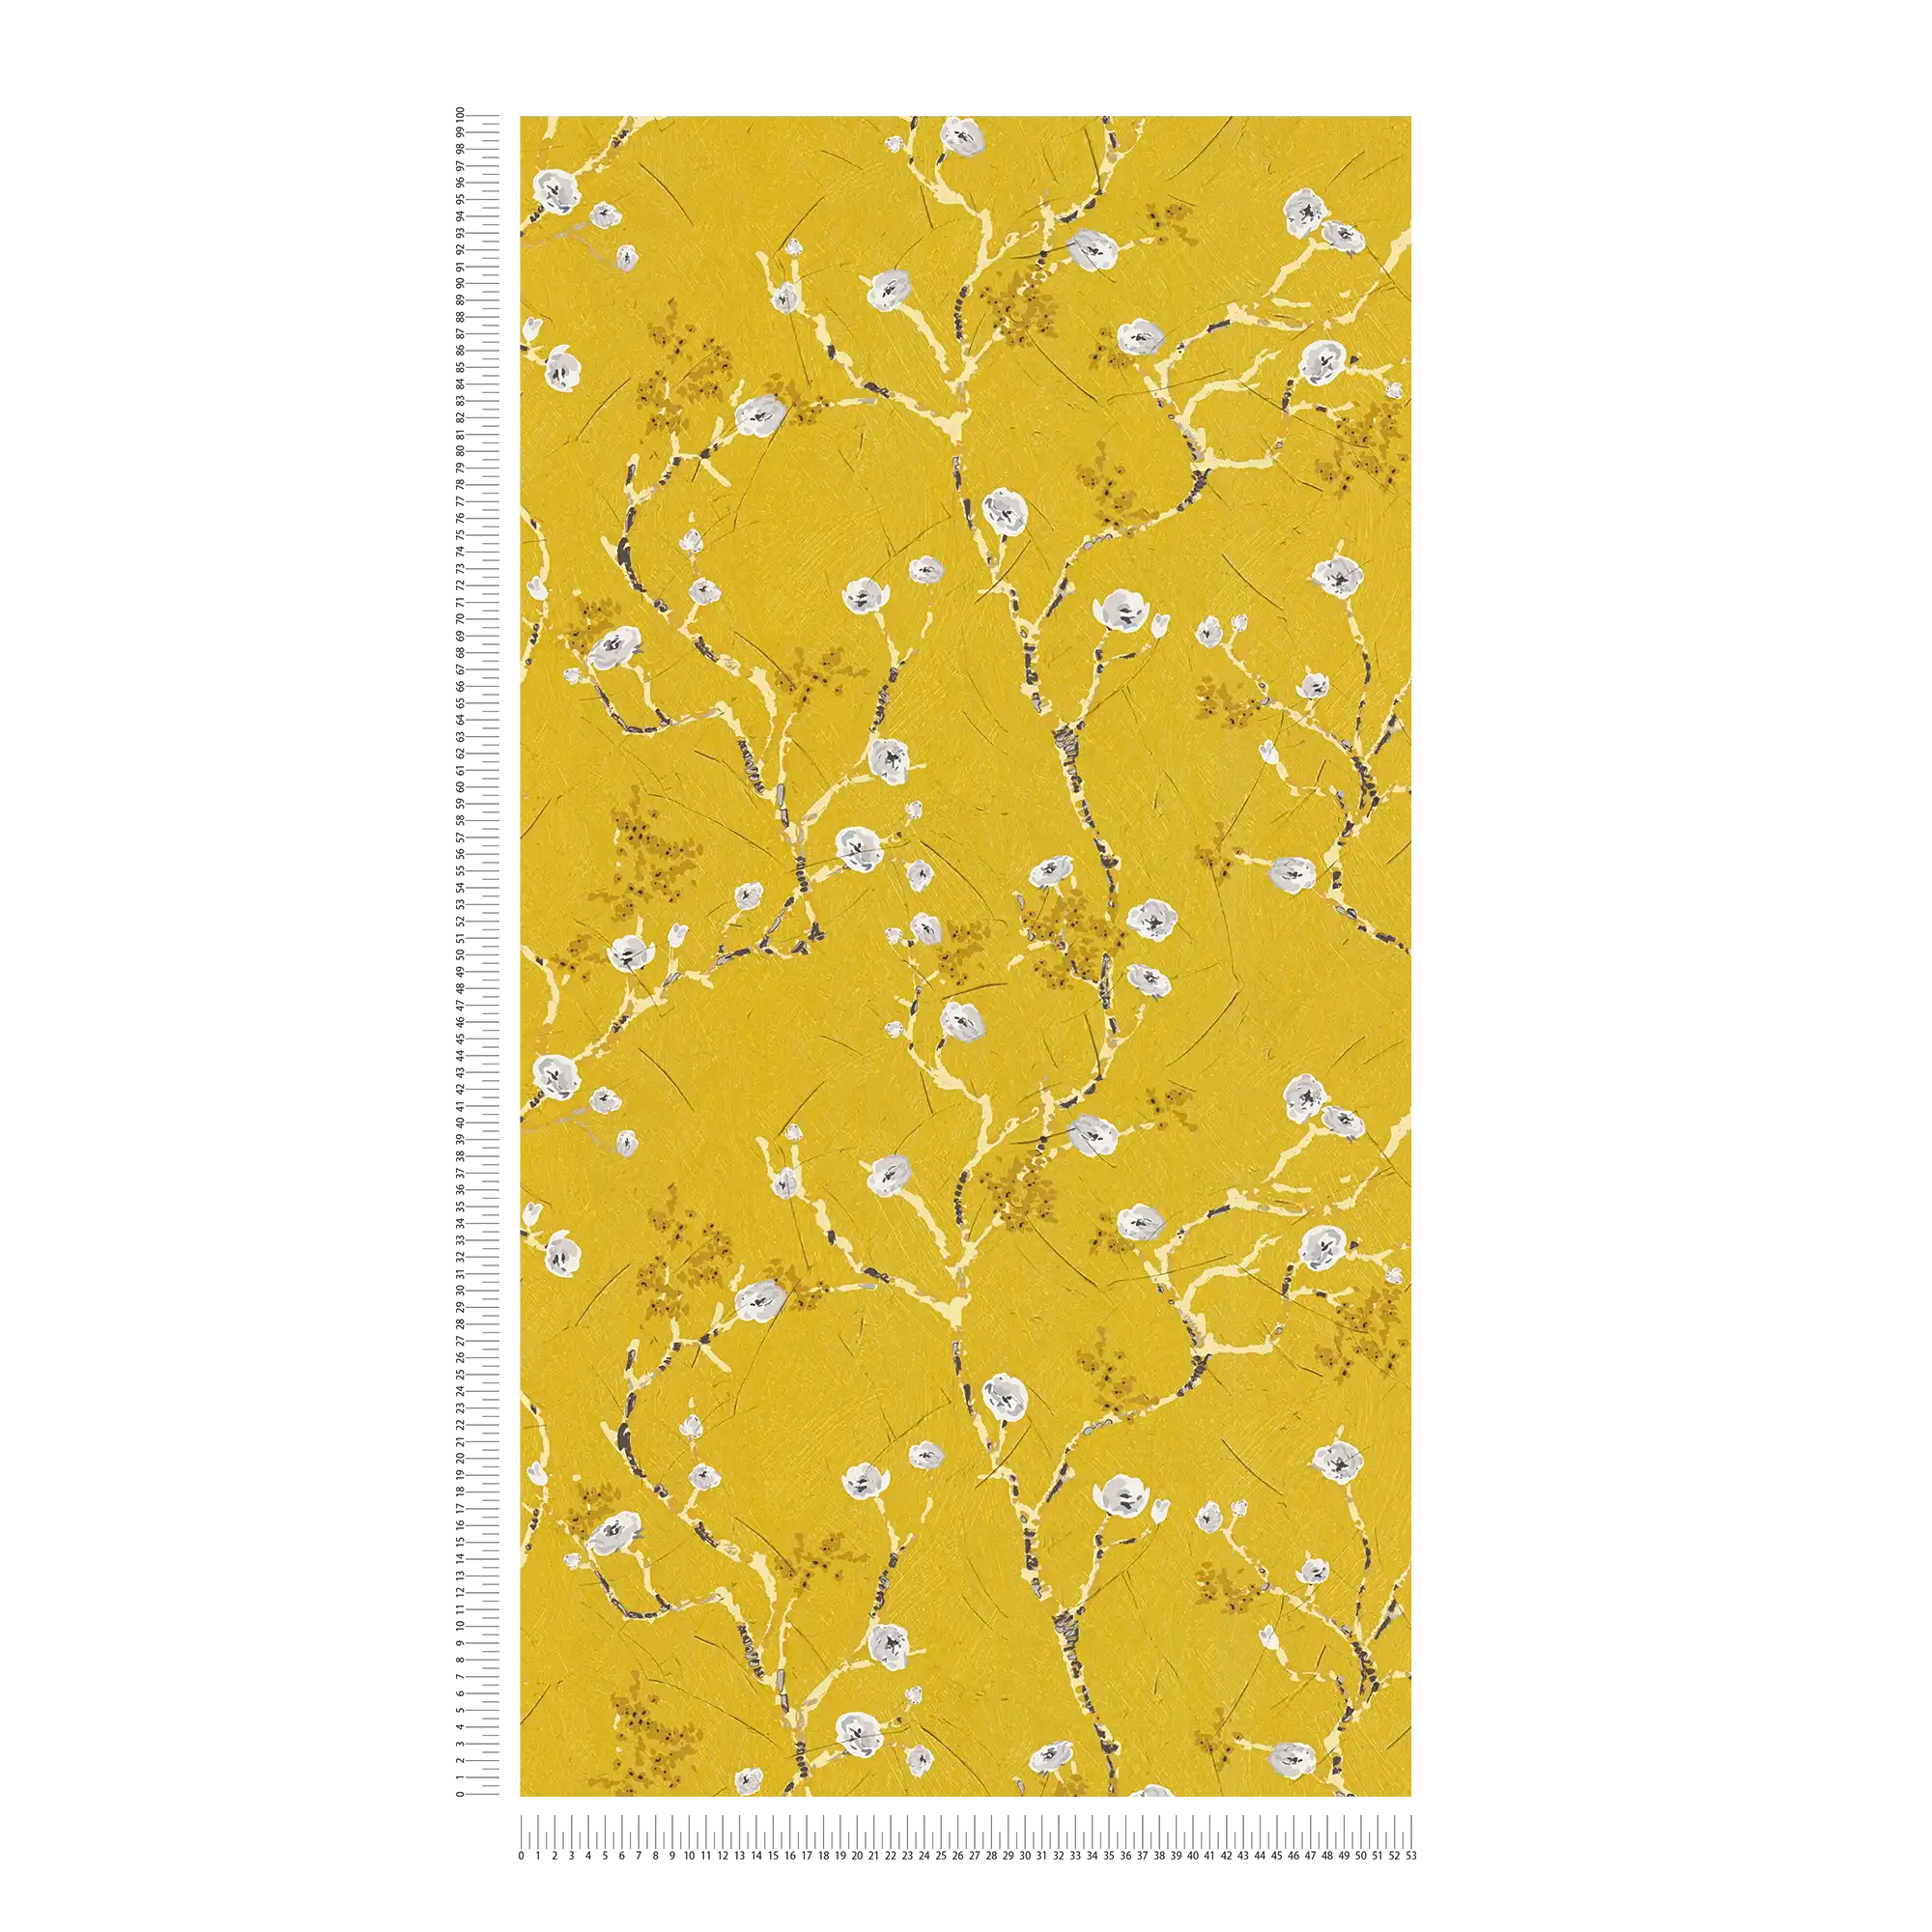             Carta da parati gialla con rami fioriti in stile disegno
        